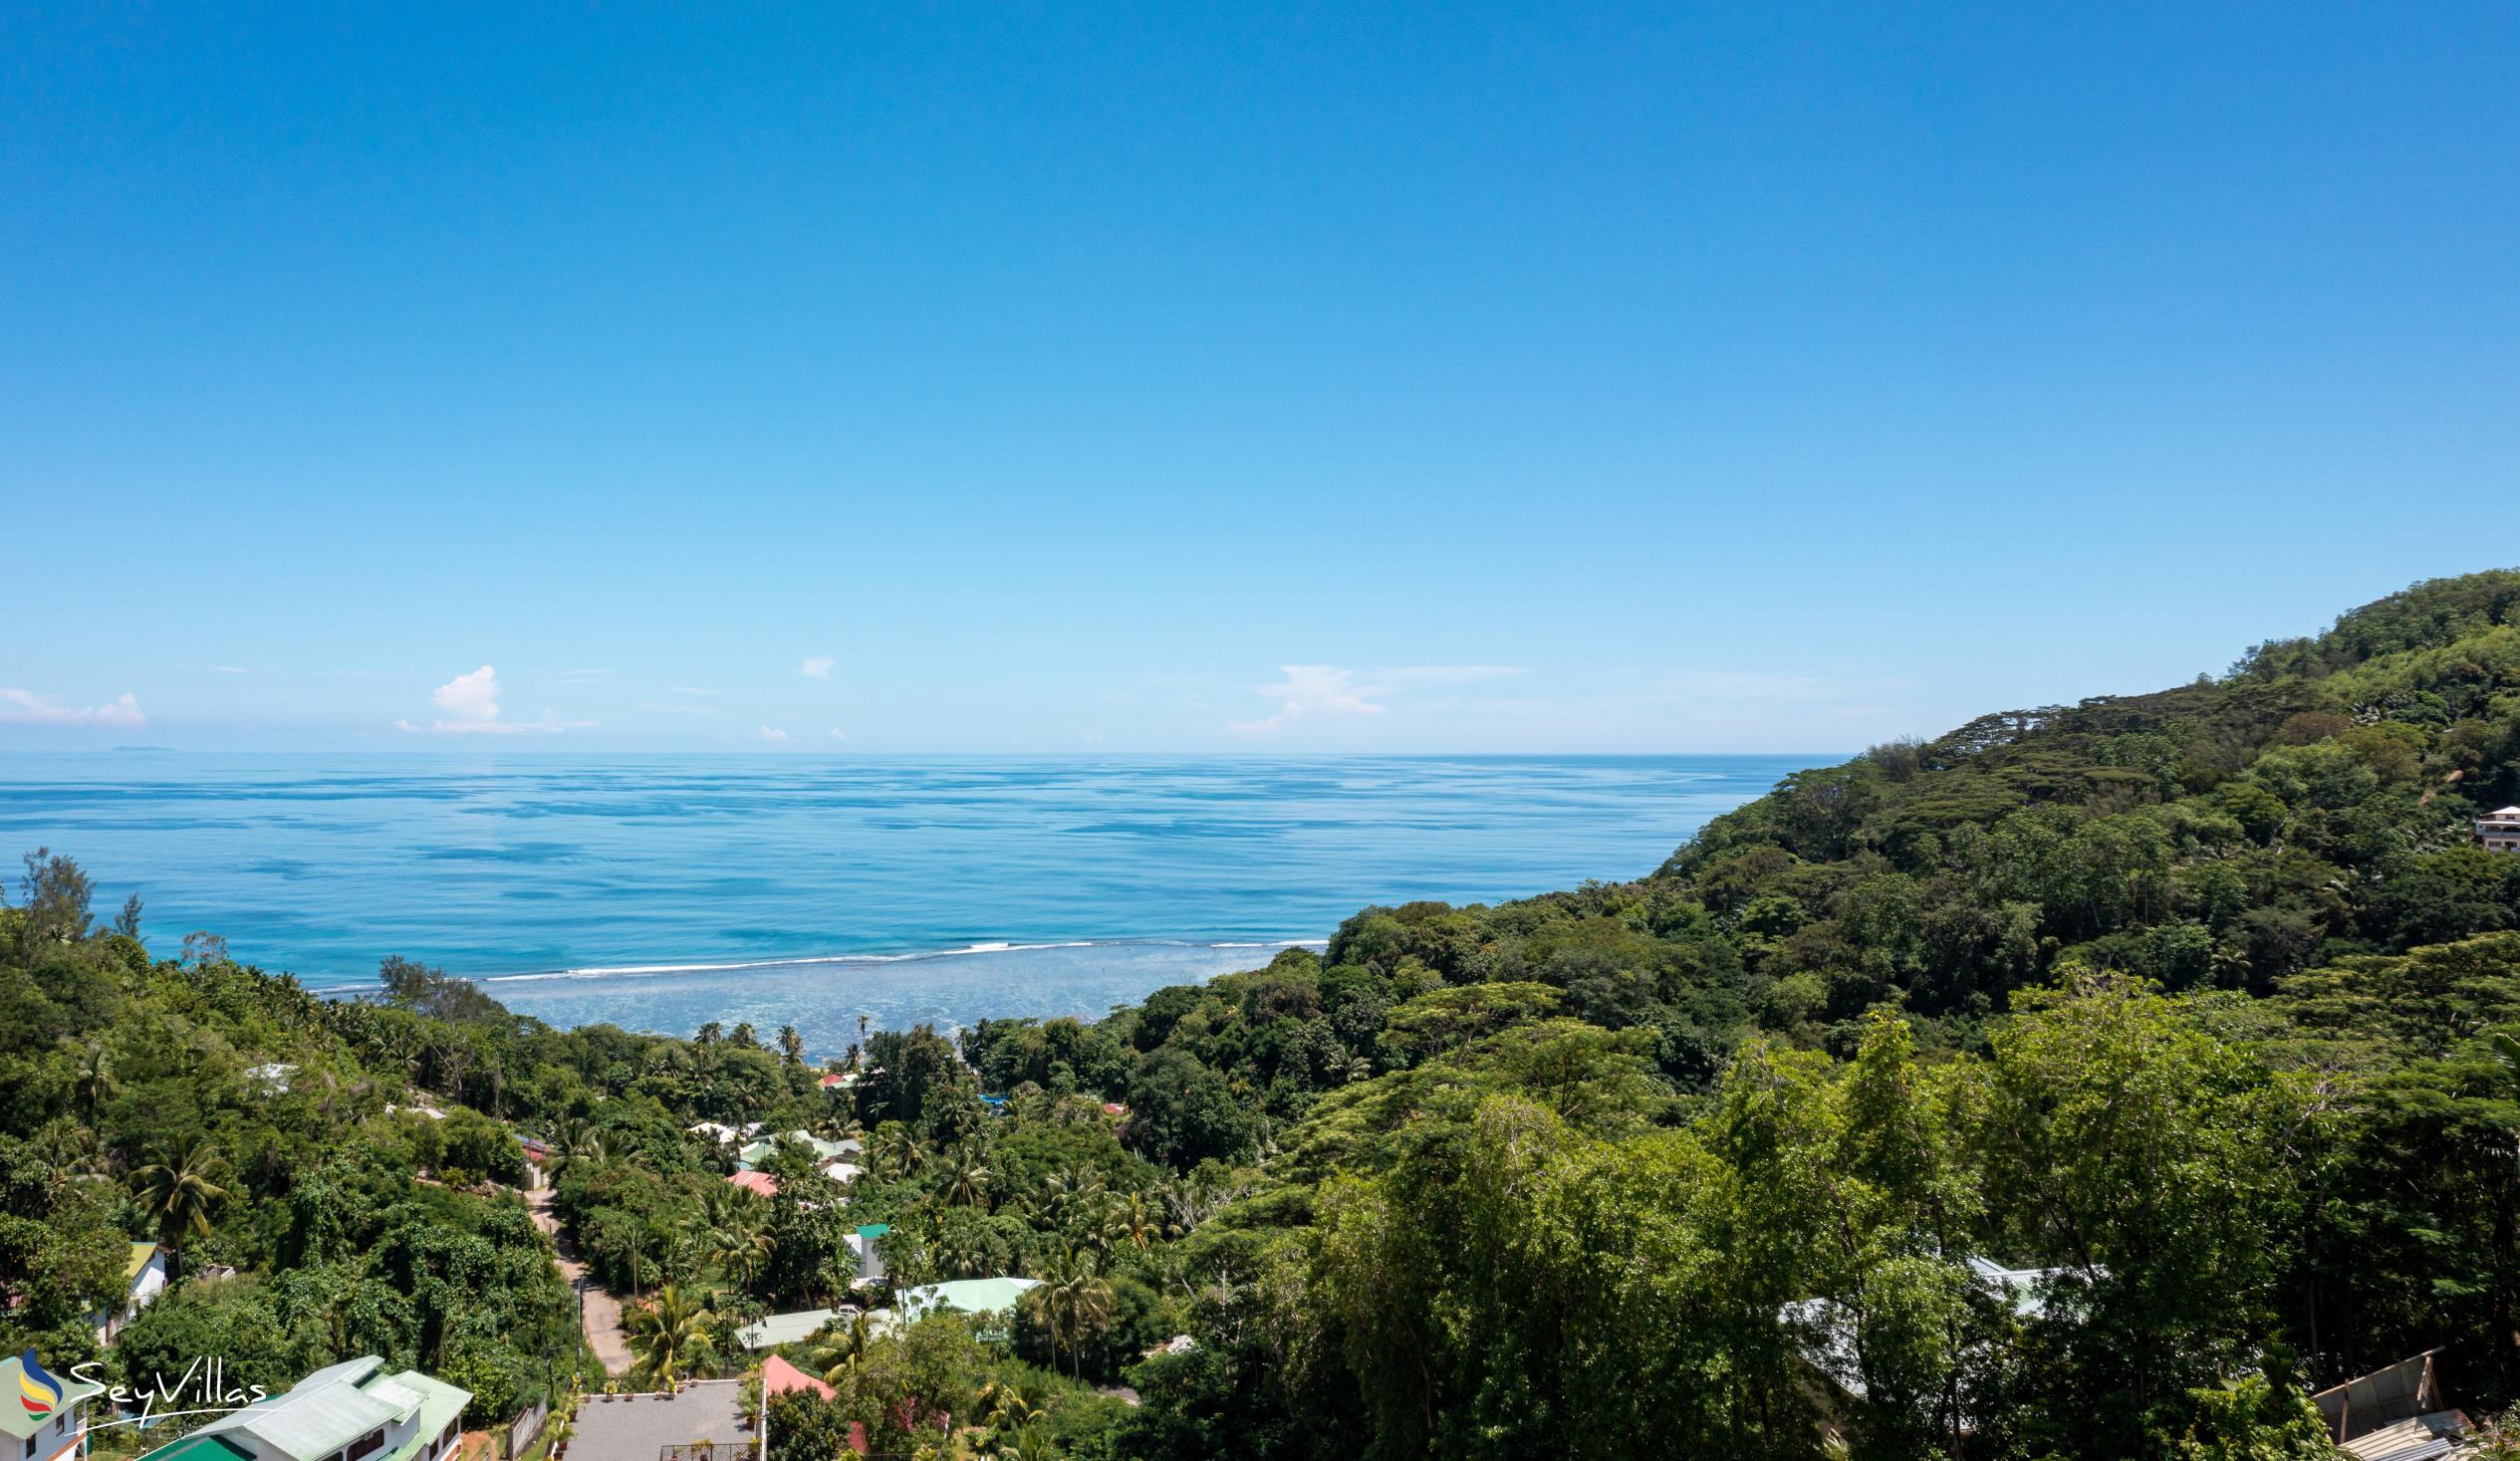 Foto 14: Hilltop Villa Bougainville - Lage - Mahé (Seychellen)